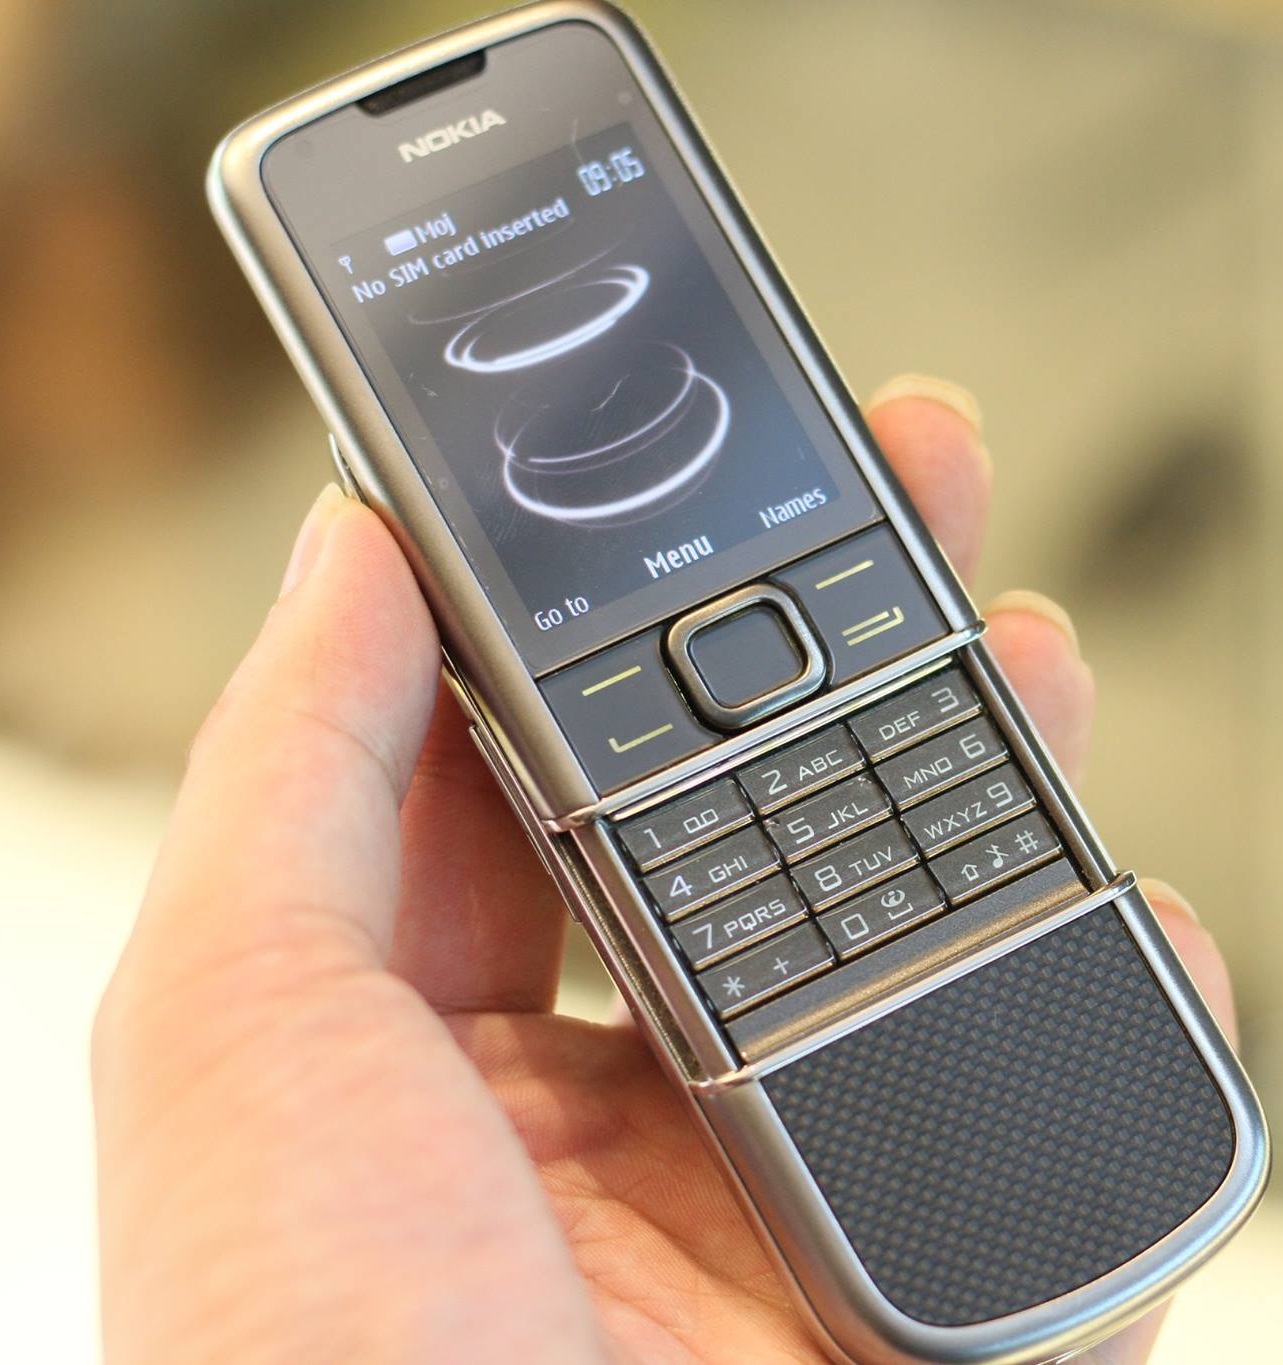 Điện thoại Nokia Carbon Arte chính hãng giúp bạn trải nghiệm cuộc sống một cách hoàn hảo. Mang đến kiểu dáng hiện đại và đầy tính năng, điện thoại này sẽ giữ cho bạn luôn kết nối với thế giới ngay cả khi bạn đang di chuyển.